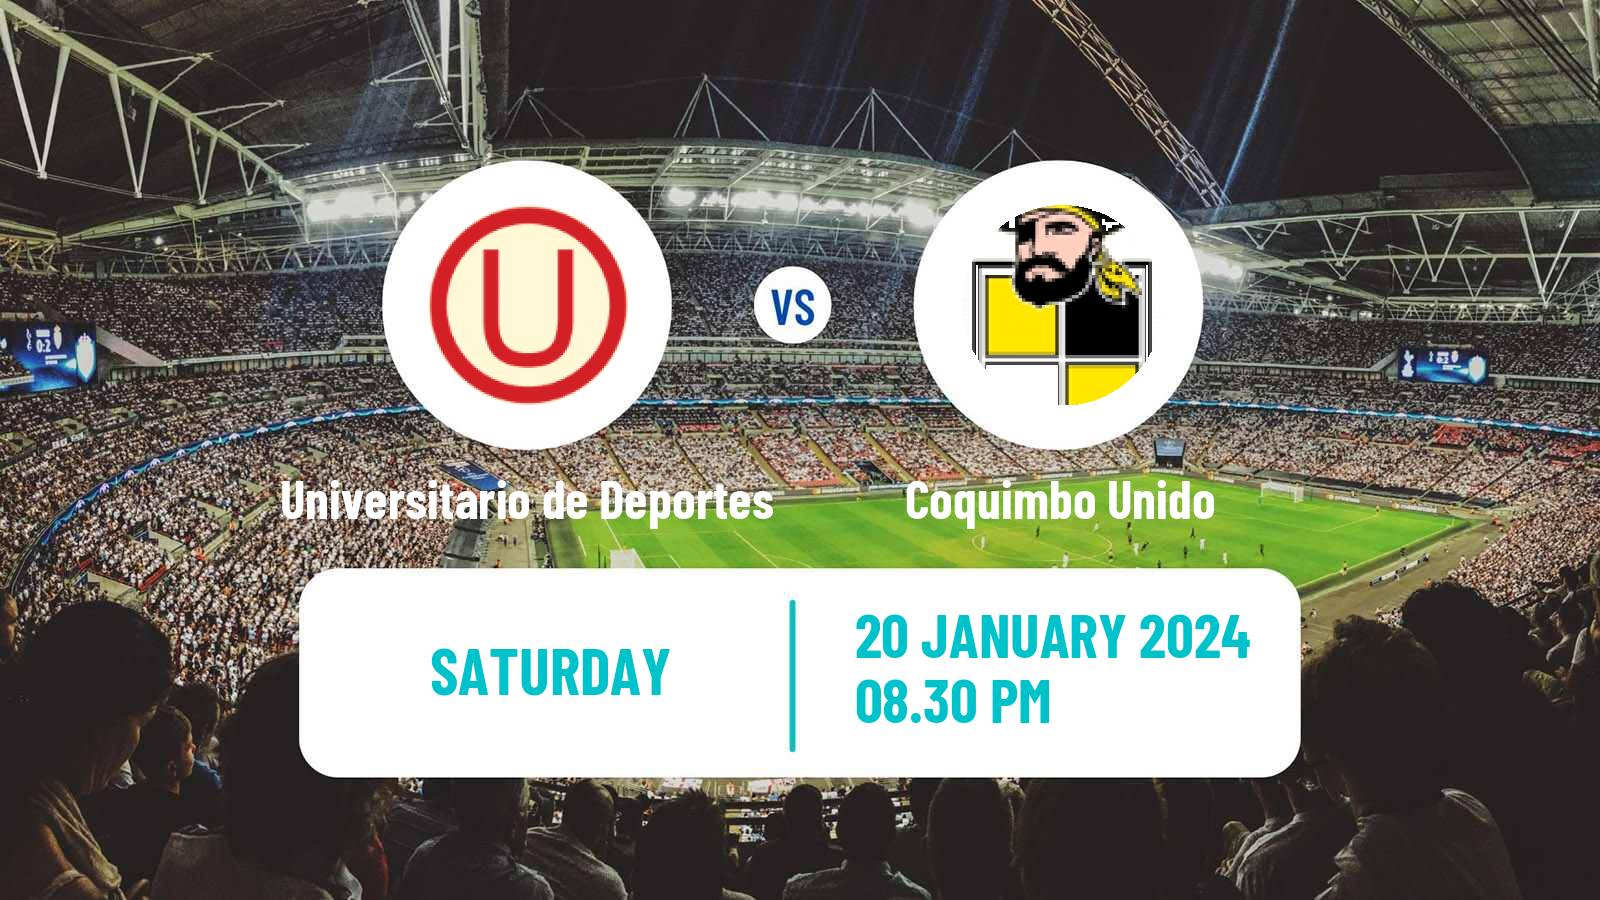 Soccer Club Friendly Universitario de Deportes - Coquimbo Unido